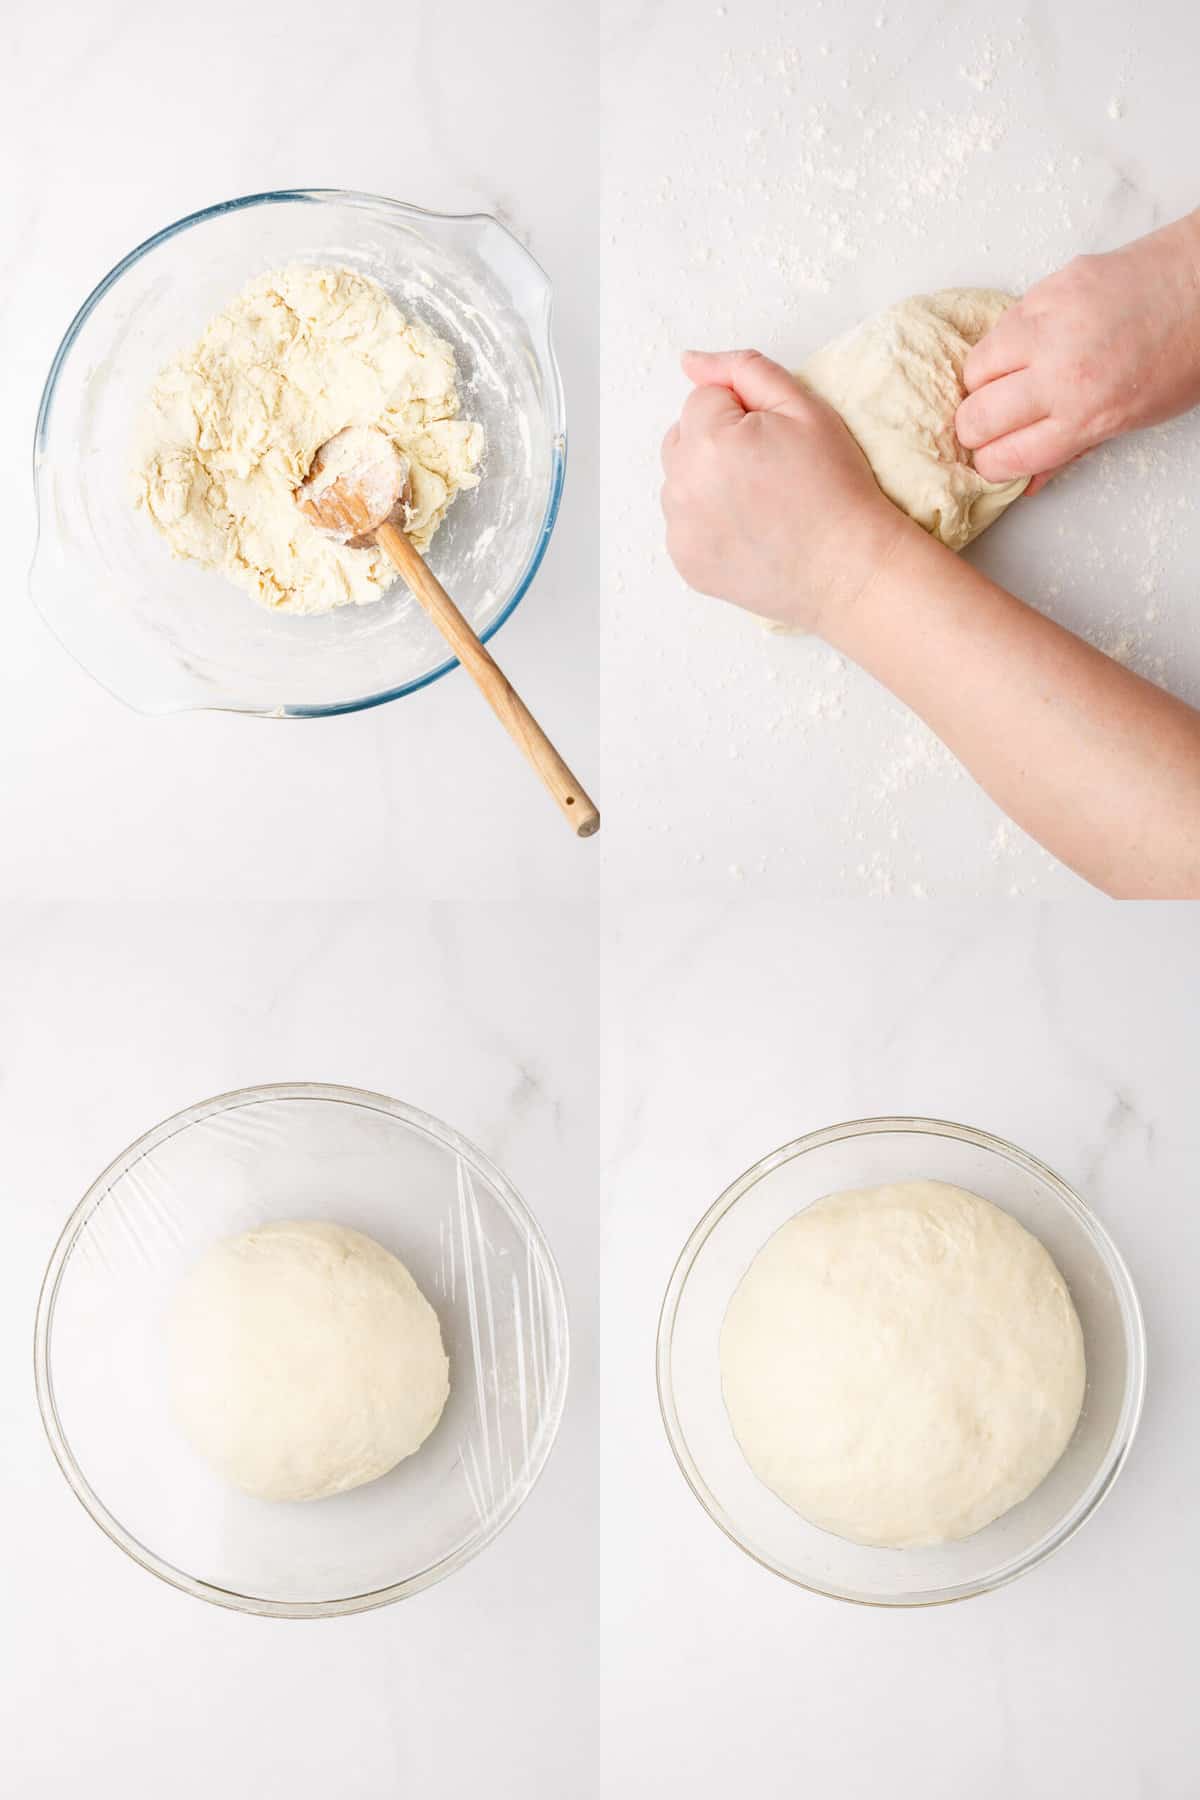 steps to make homemade pizza dough